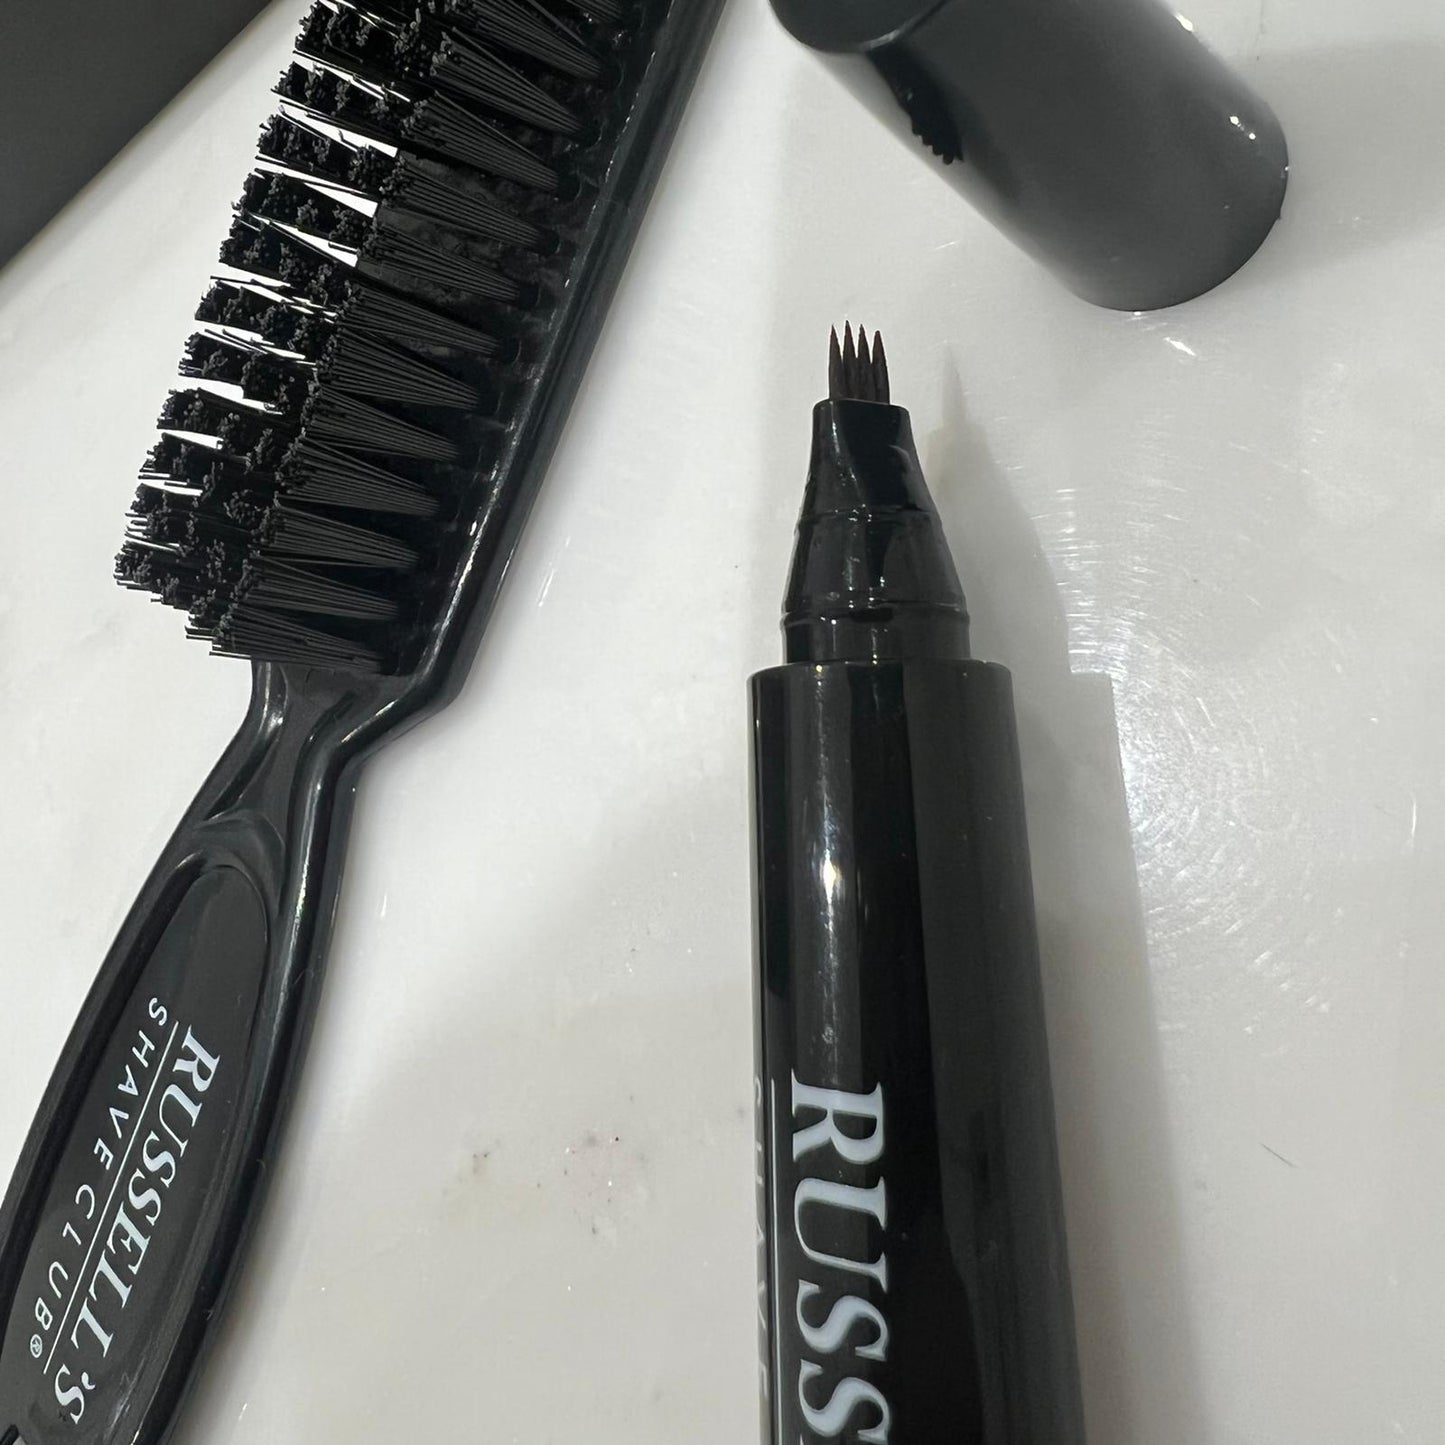 Russell’s Thicker Beard Filler Pen - Achieve a Fuller Looking Beard